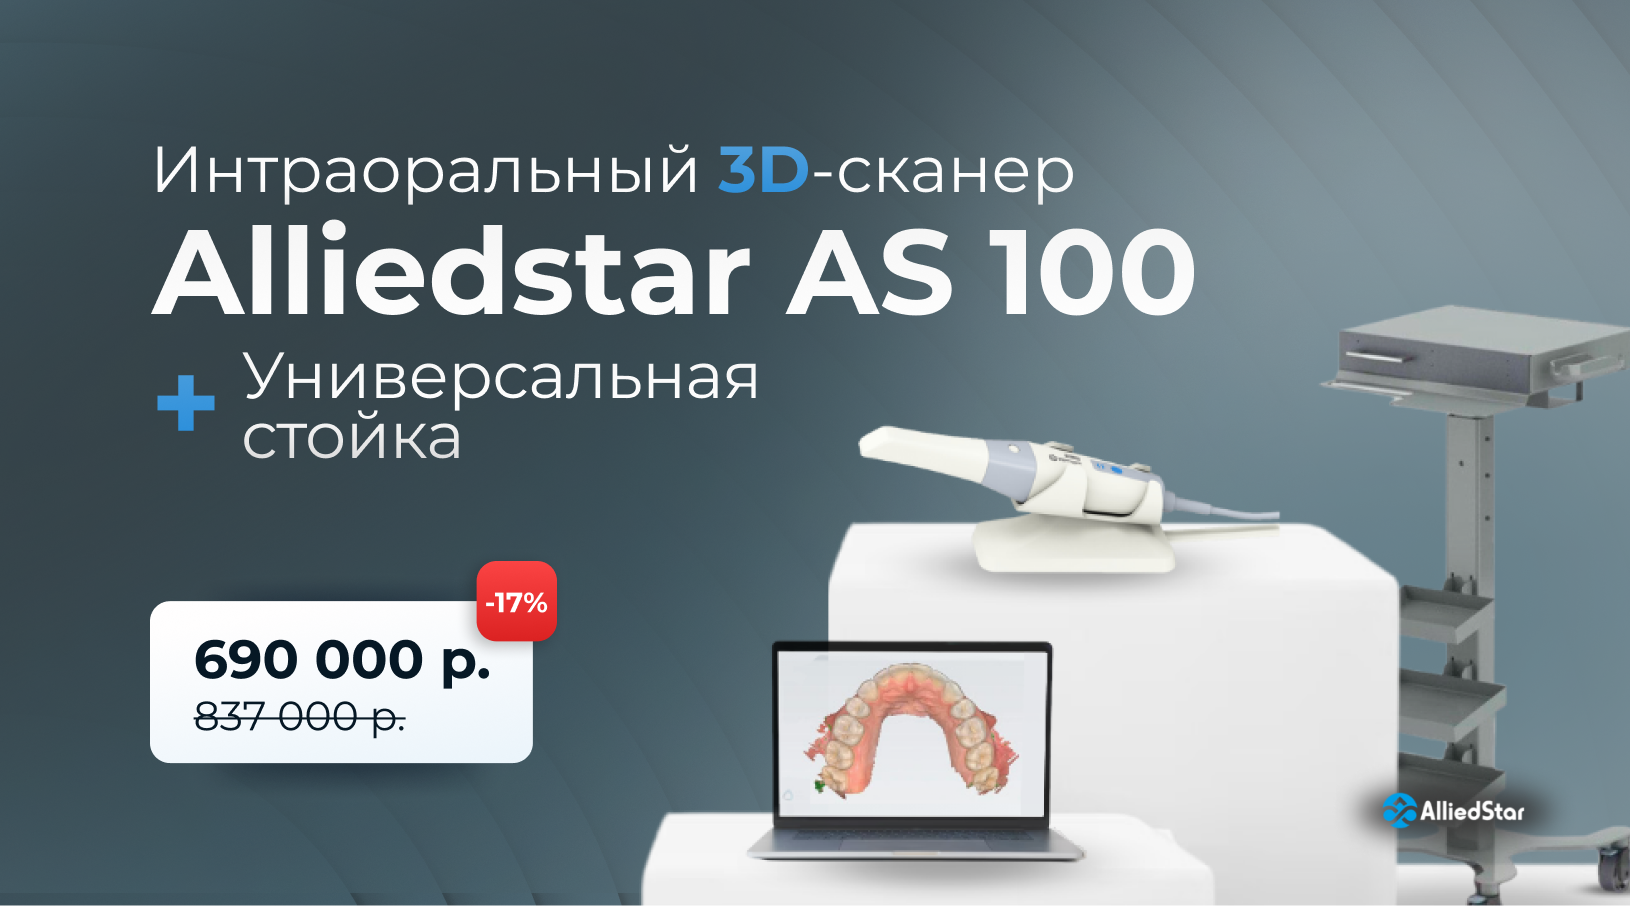 Акция на интраоральный 3D-сканер Alliedstar AS 100 с универсальной стойкой